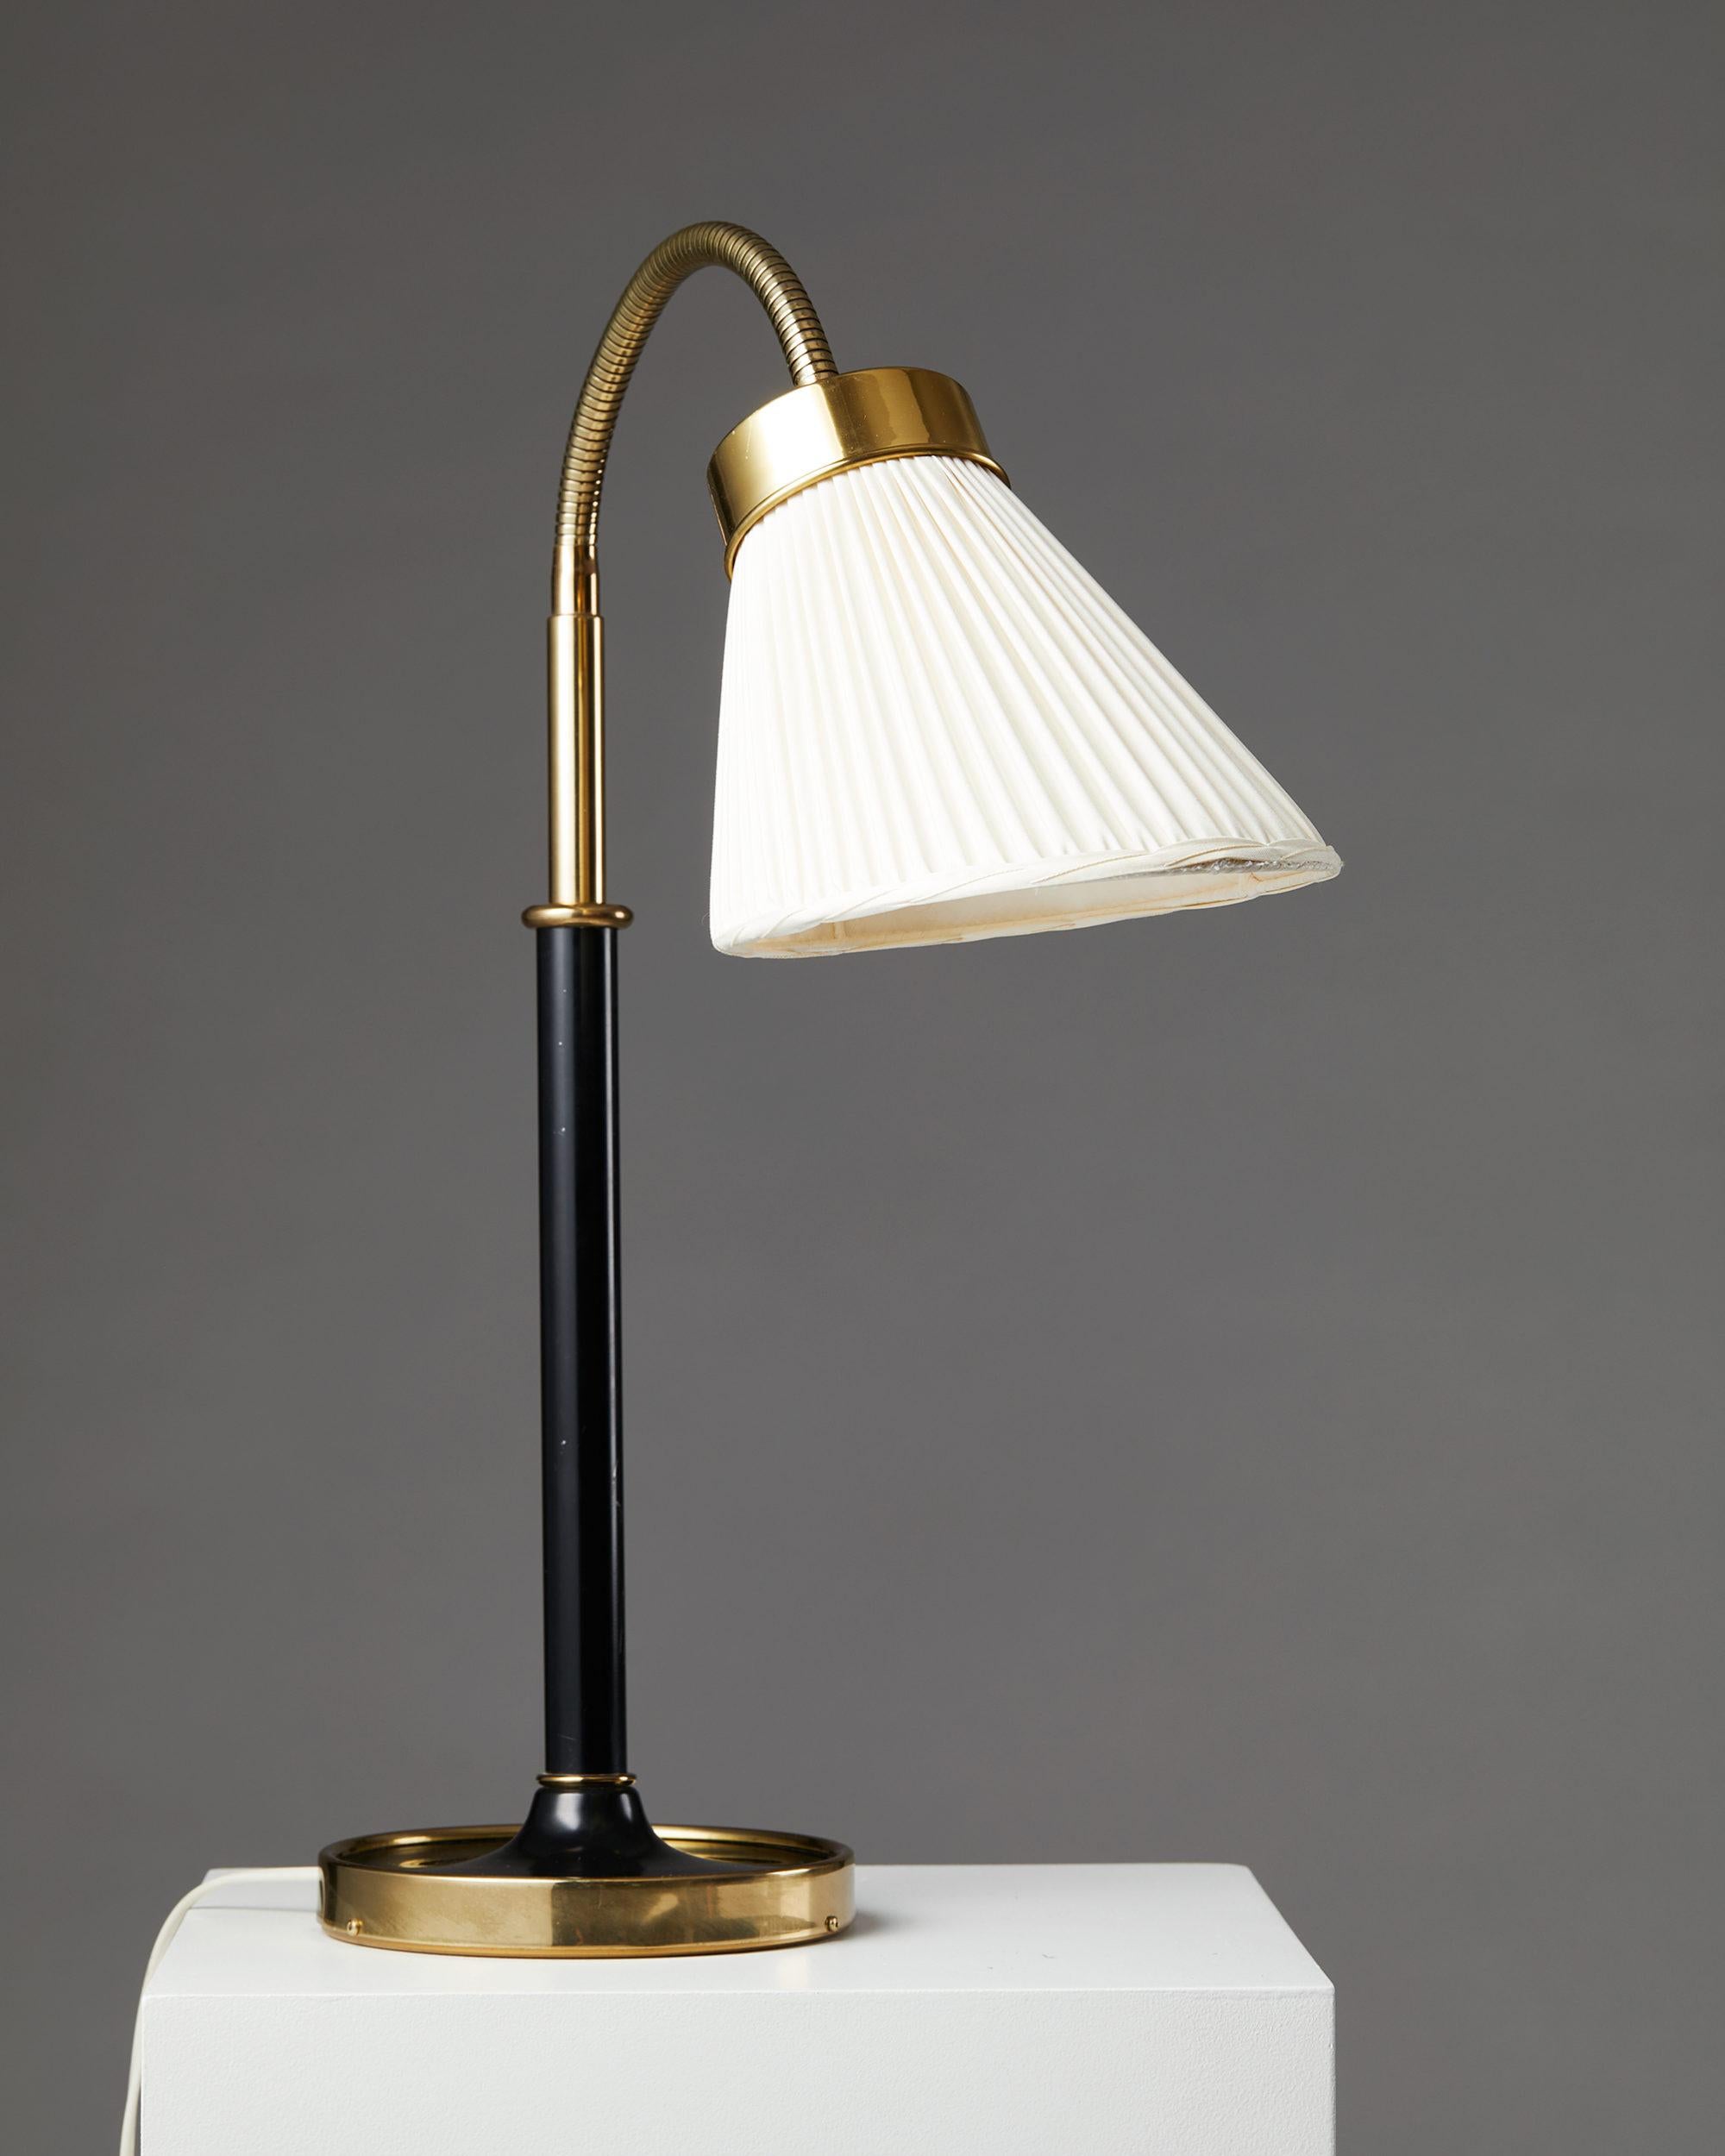 Mid-Century Modern Table Lamp Model 2434 Designed by Josef Frank for Svenskt Tenn, Sweden, 1939